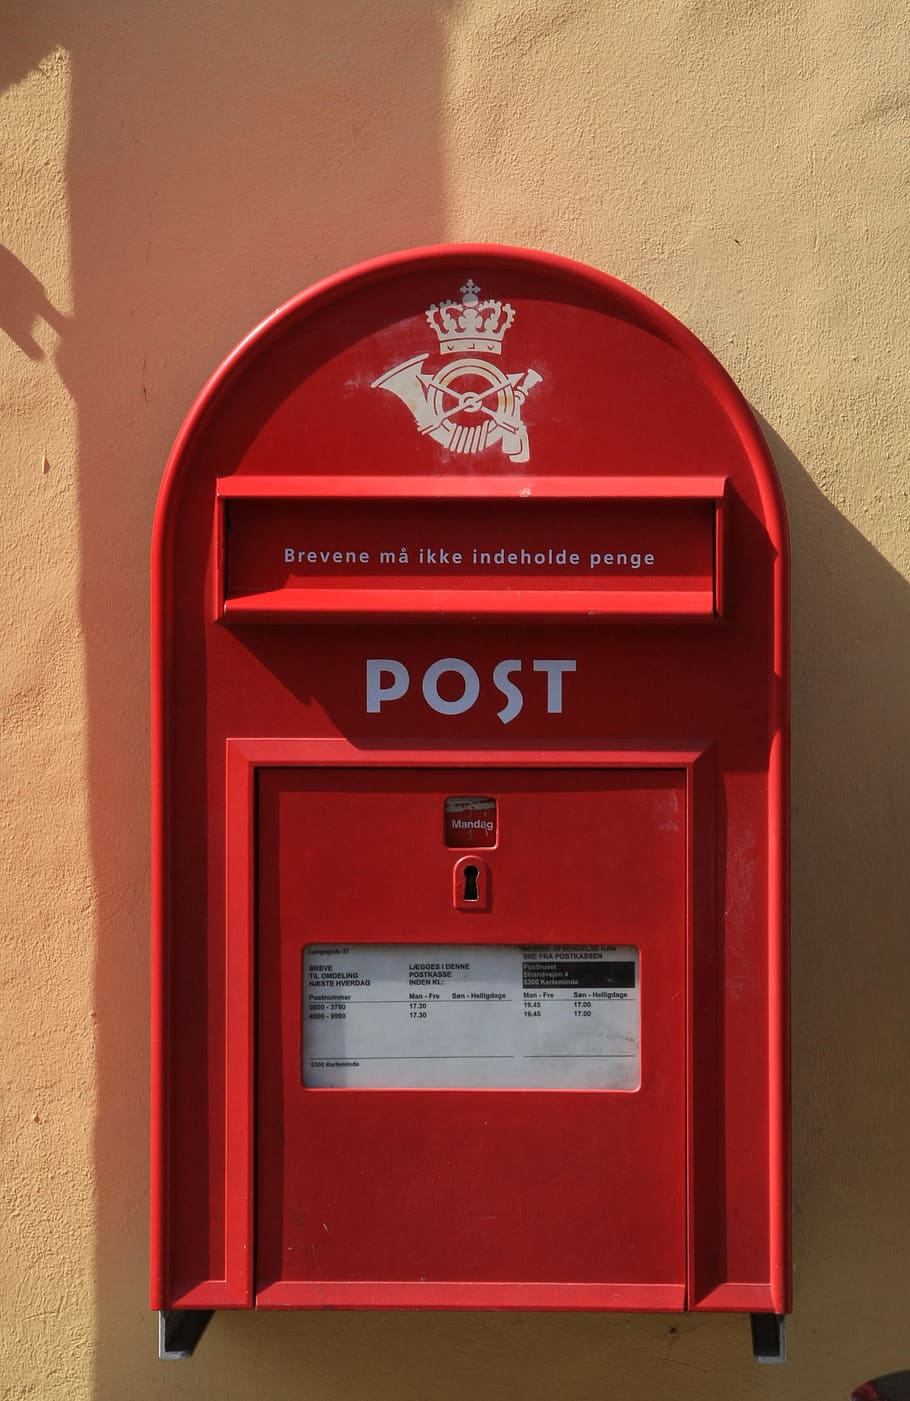 Buzón, correo, caja, rojo, carta, postal, comunicación, servicio, entrega, franqueo